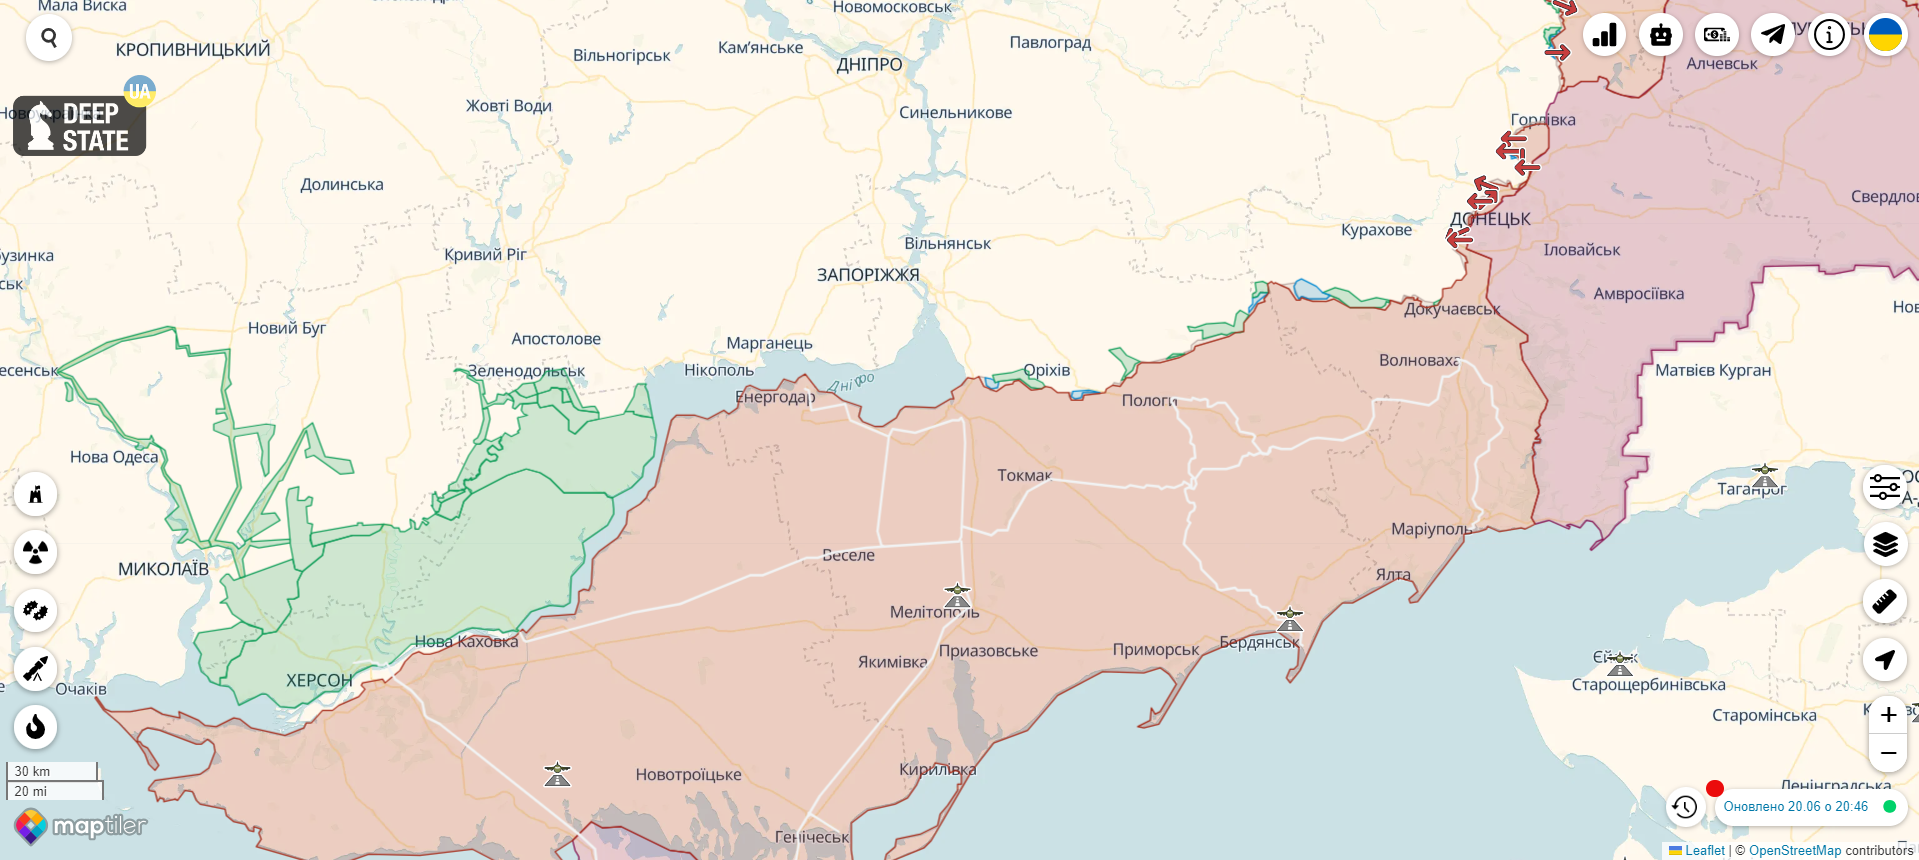 ВСУ уже под Токмаком, а в армии РФ потери до 60%: Пригожин обвинил минобороны РФ в умалчивании реальной ситуации на юге Украины